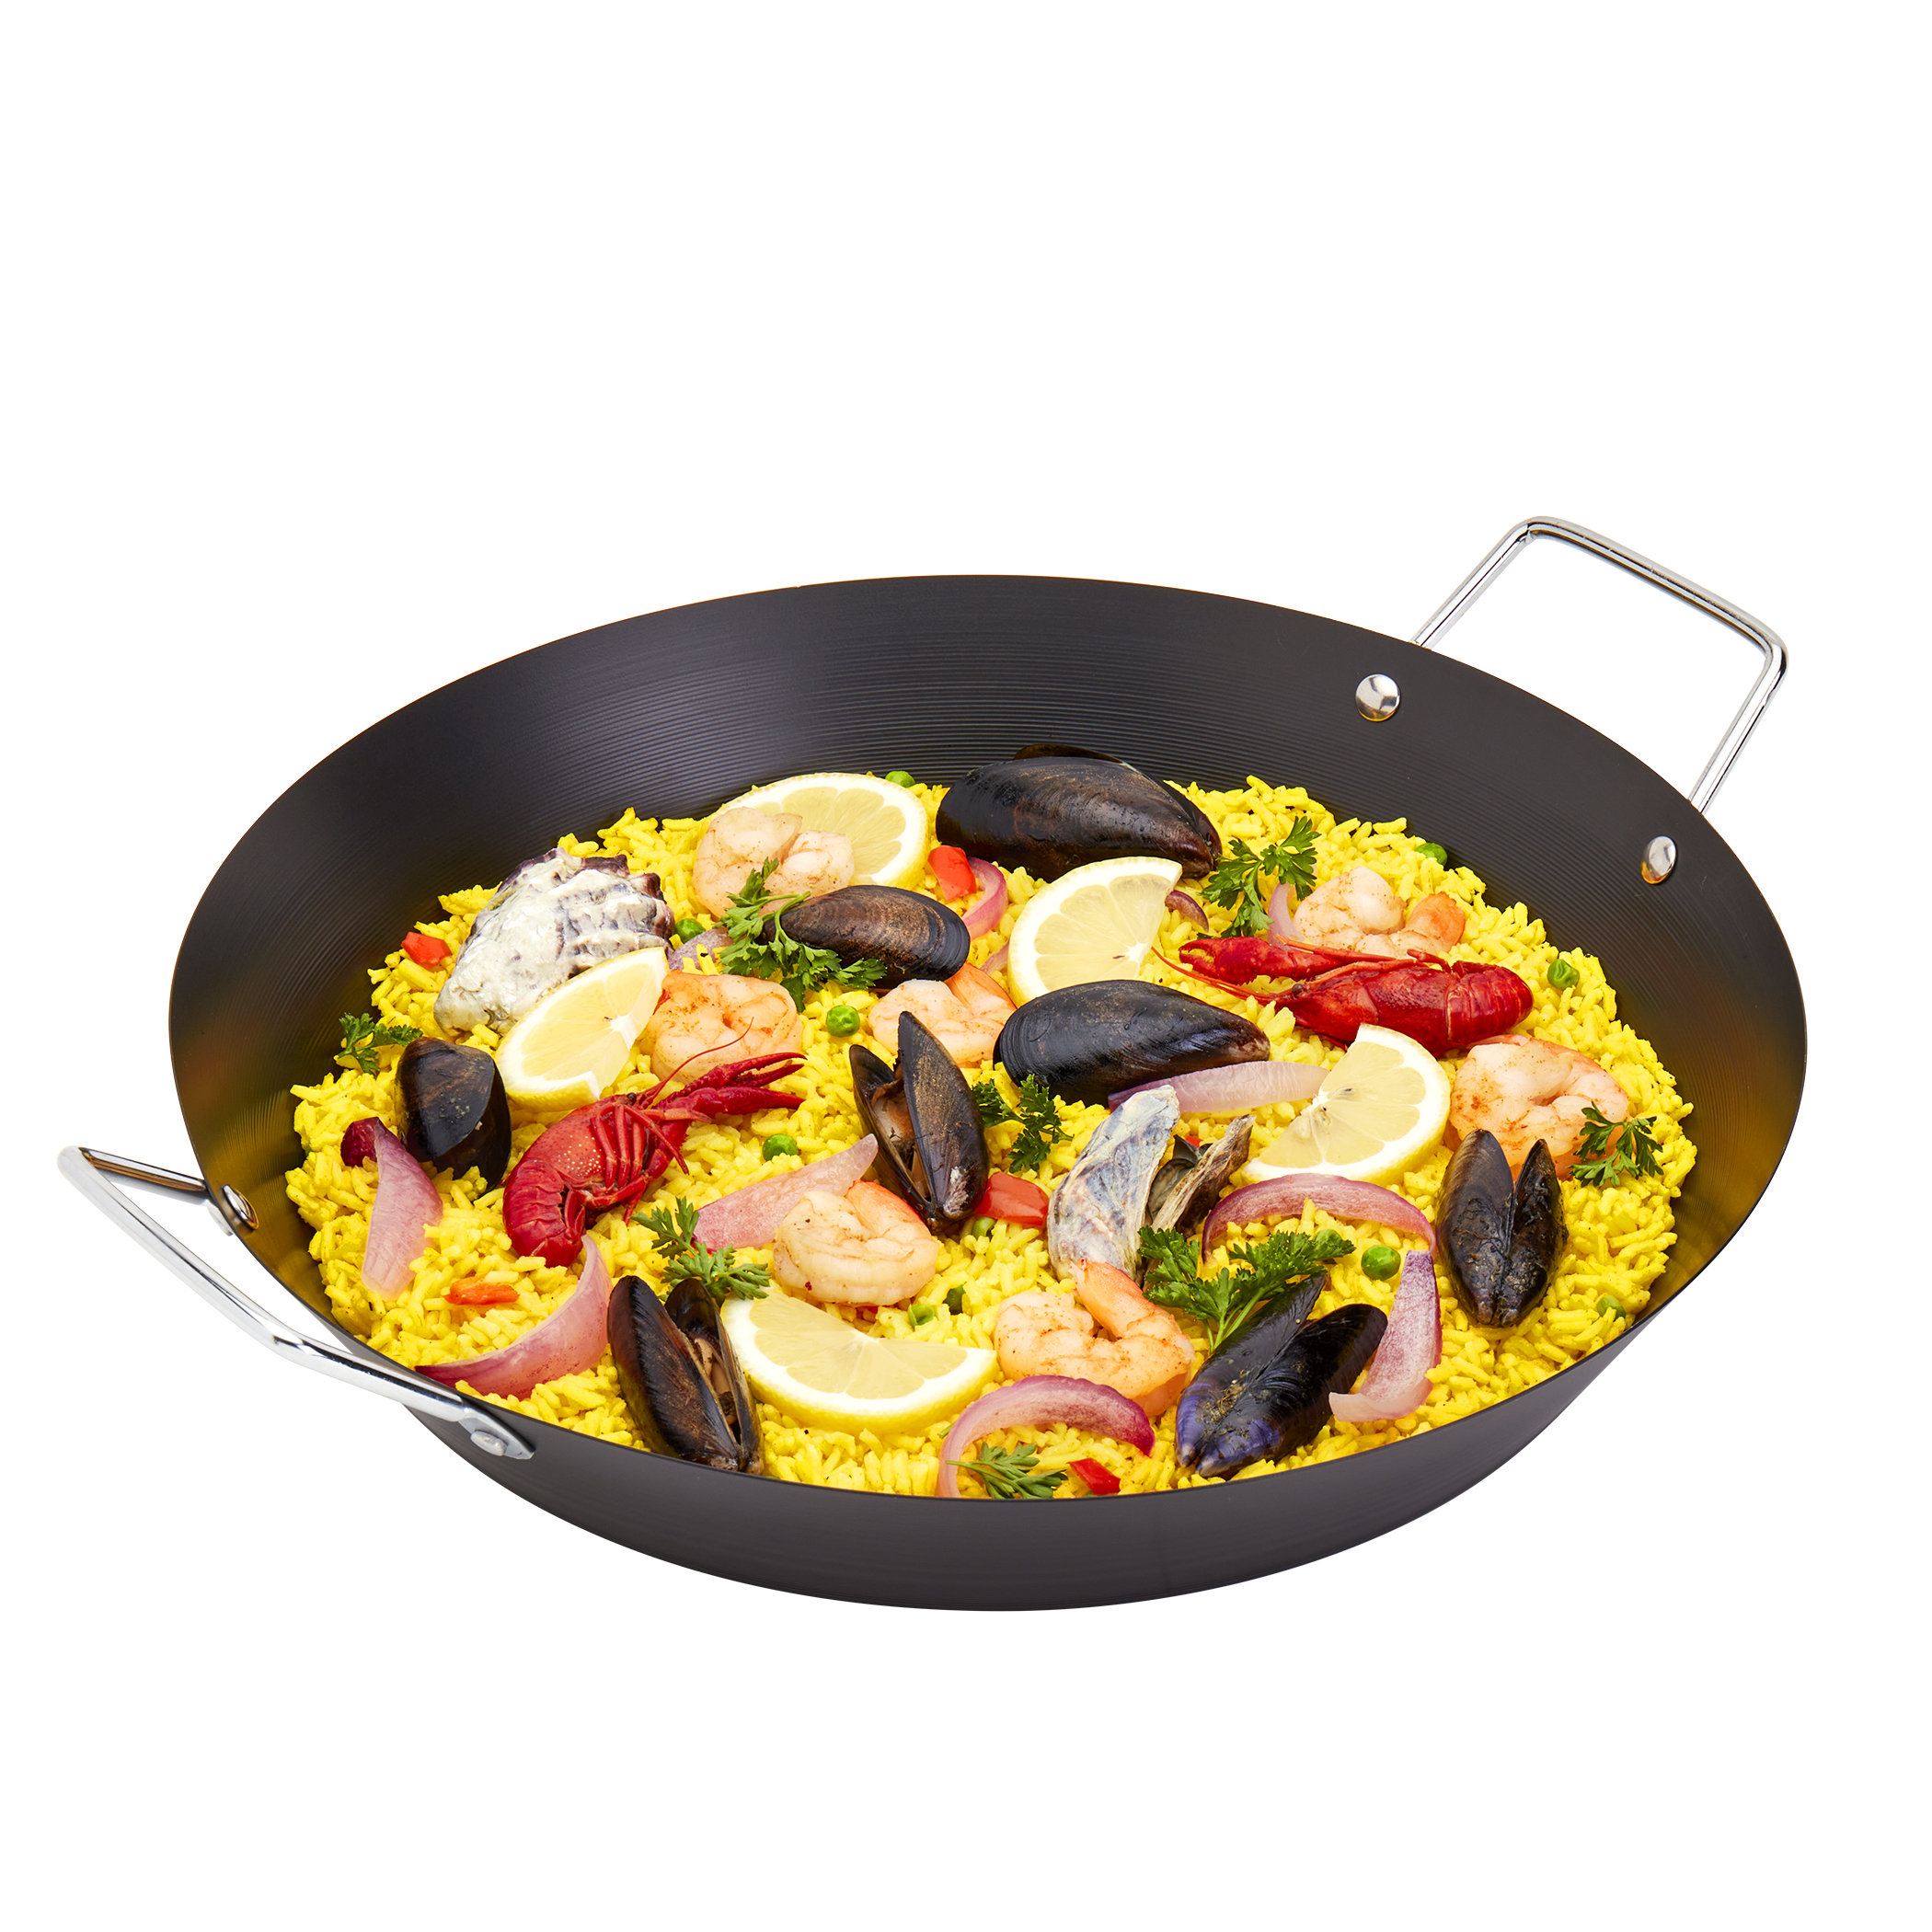 Paella Pan 15 inch, Kitchenware